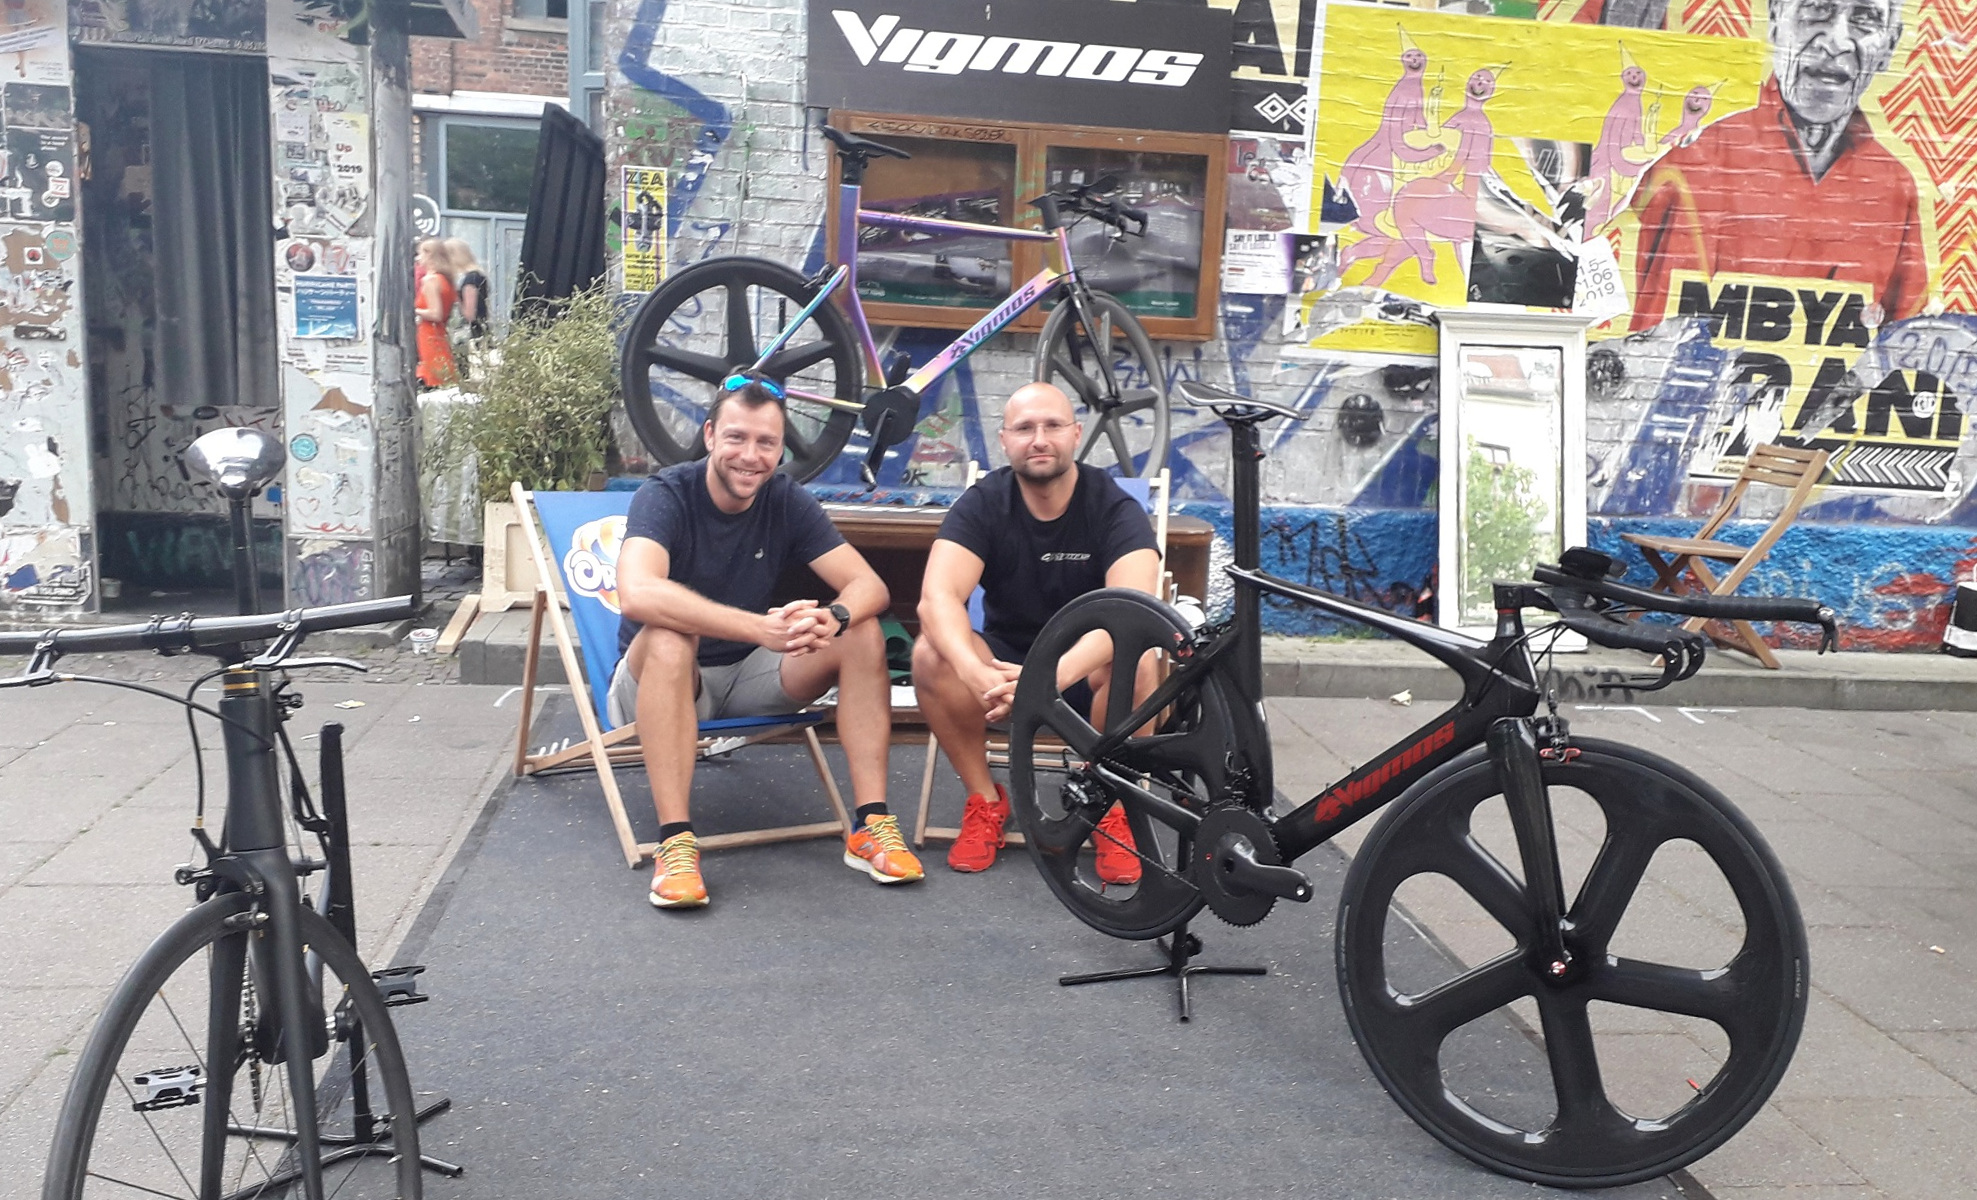 Der Chef von Vigmos.de ihr Fahrradbauer und Spezialist für Titanteile Titanparts